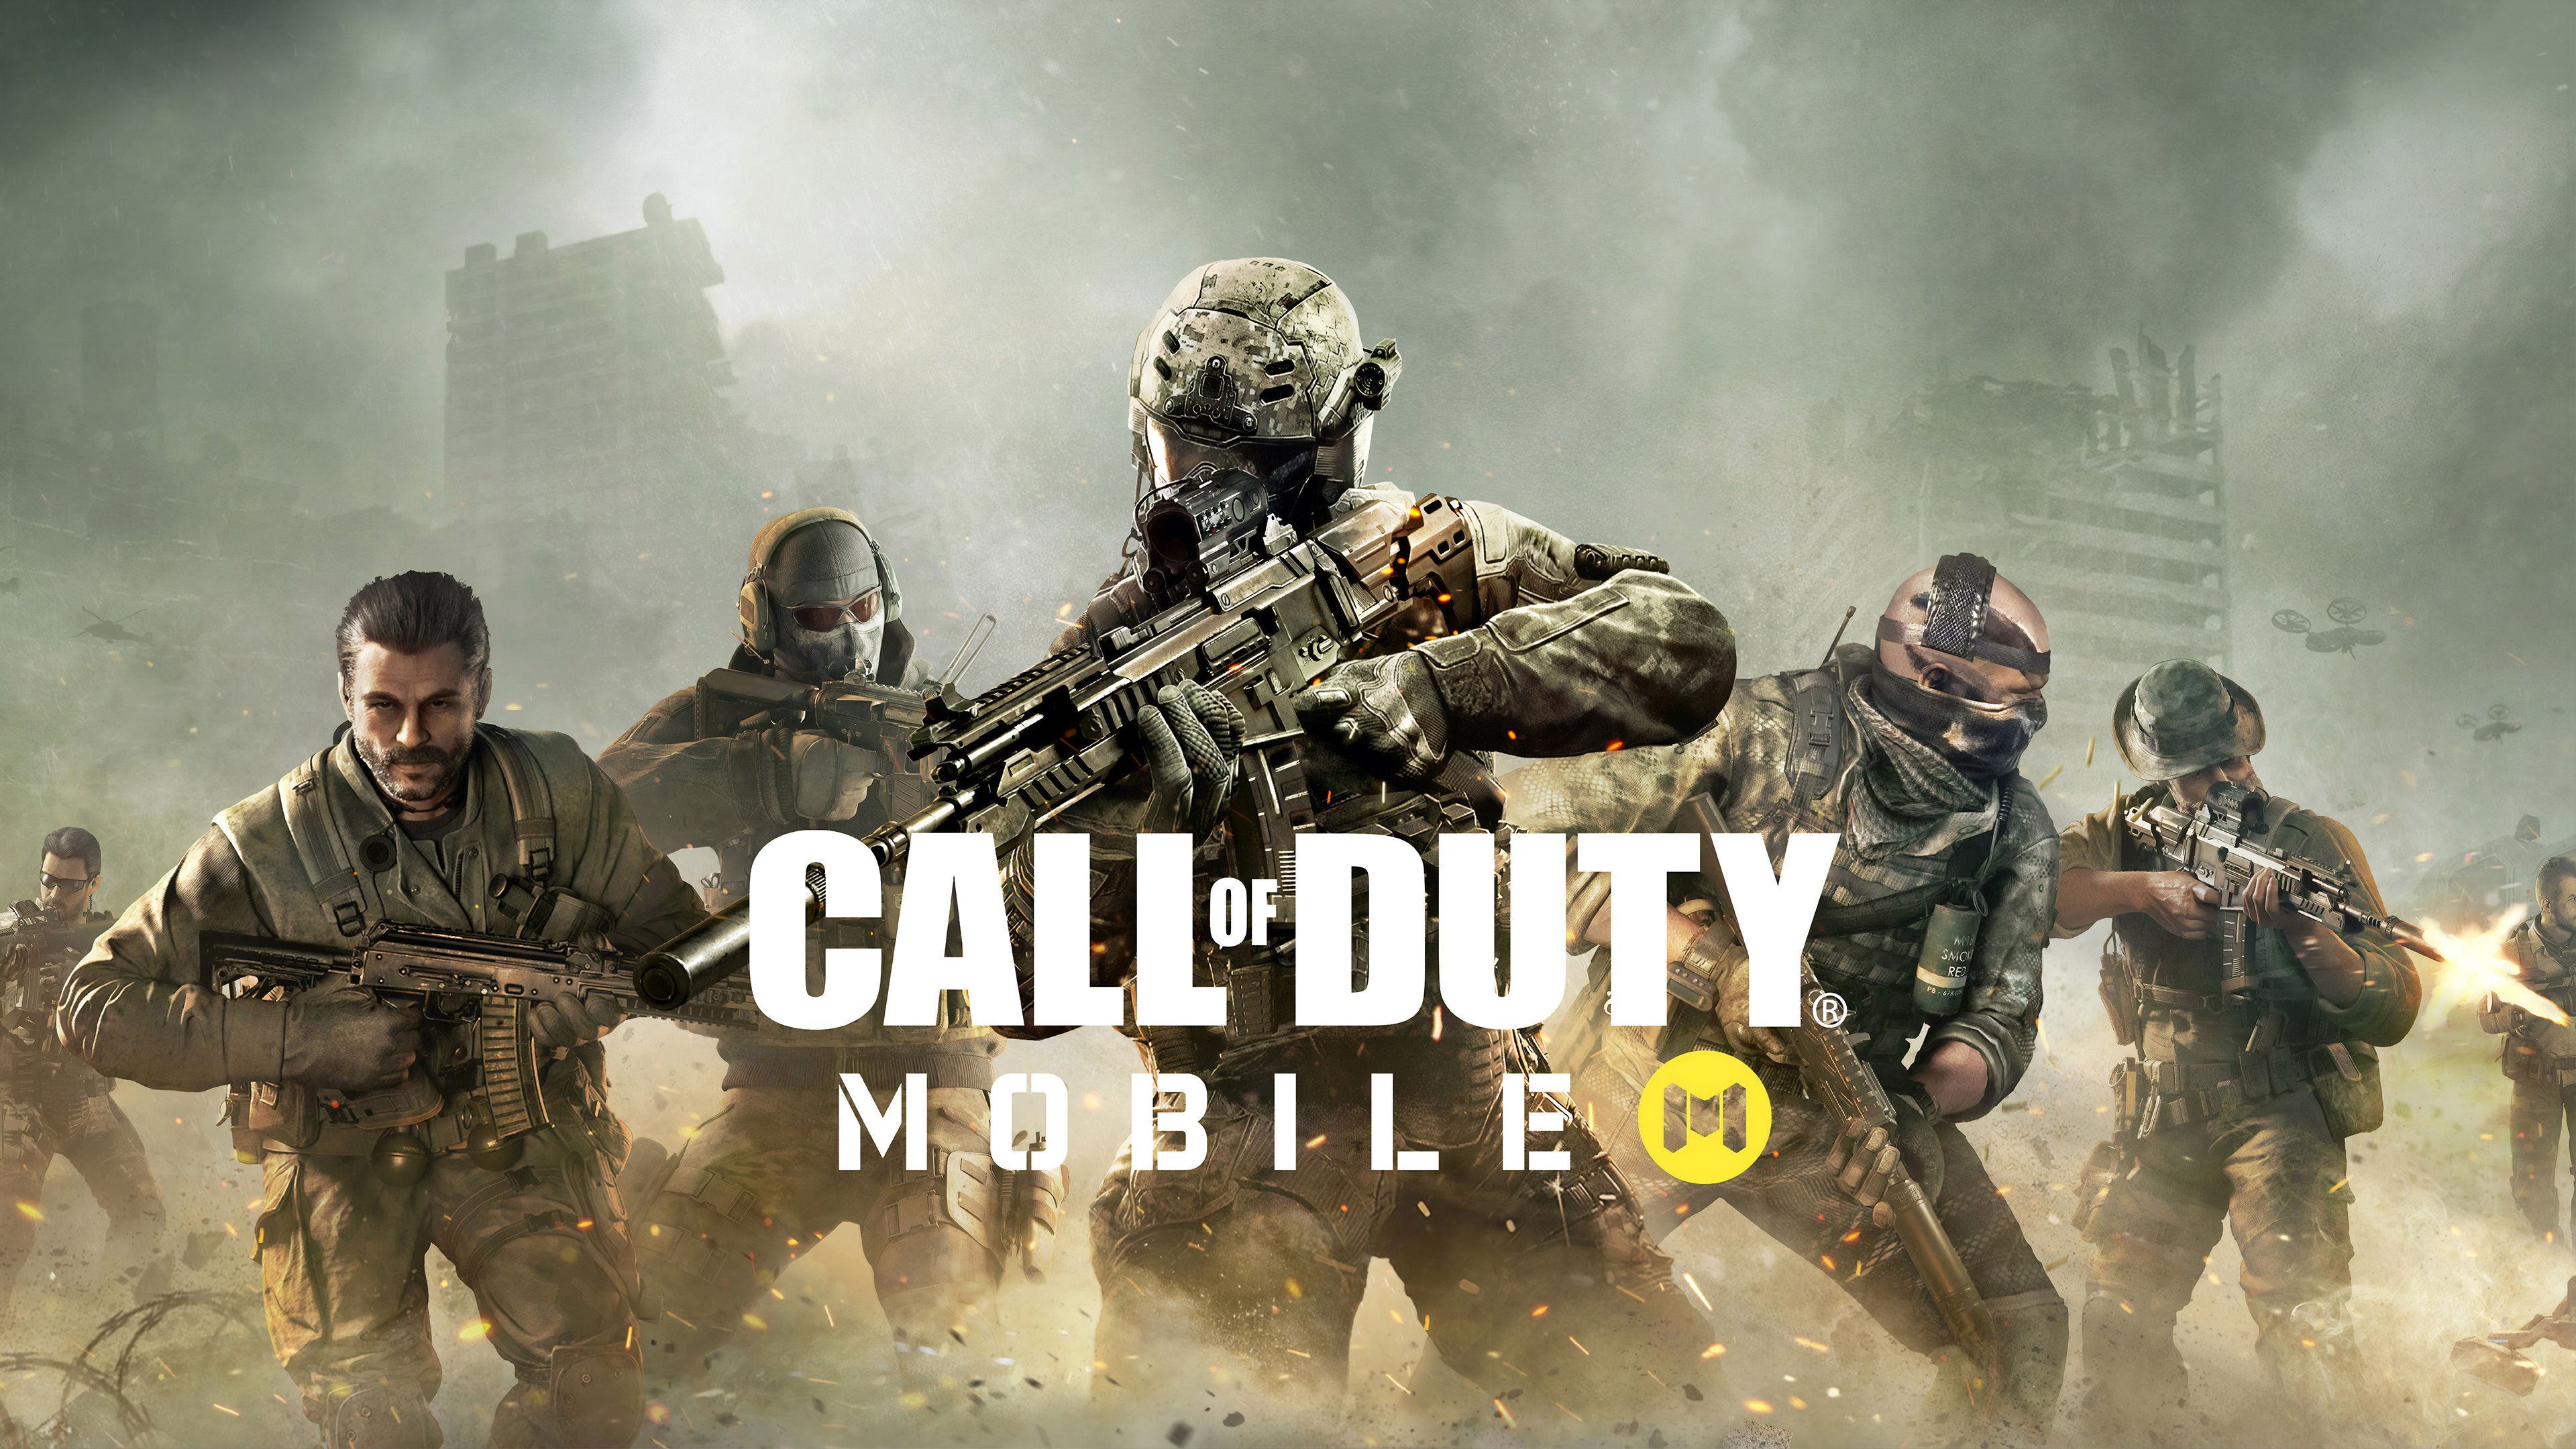 Call Of Duty Modern Warfare Wallpaper Of Duty Mobile Image HD